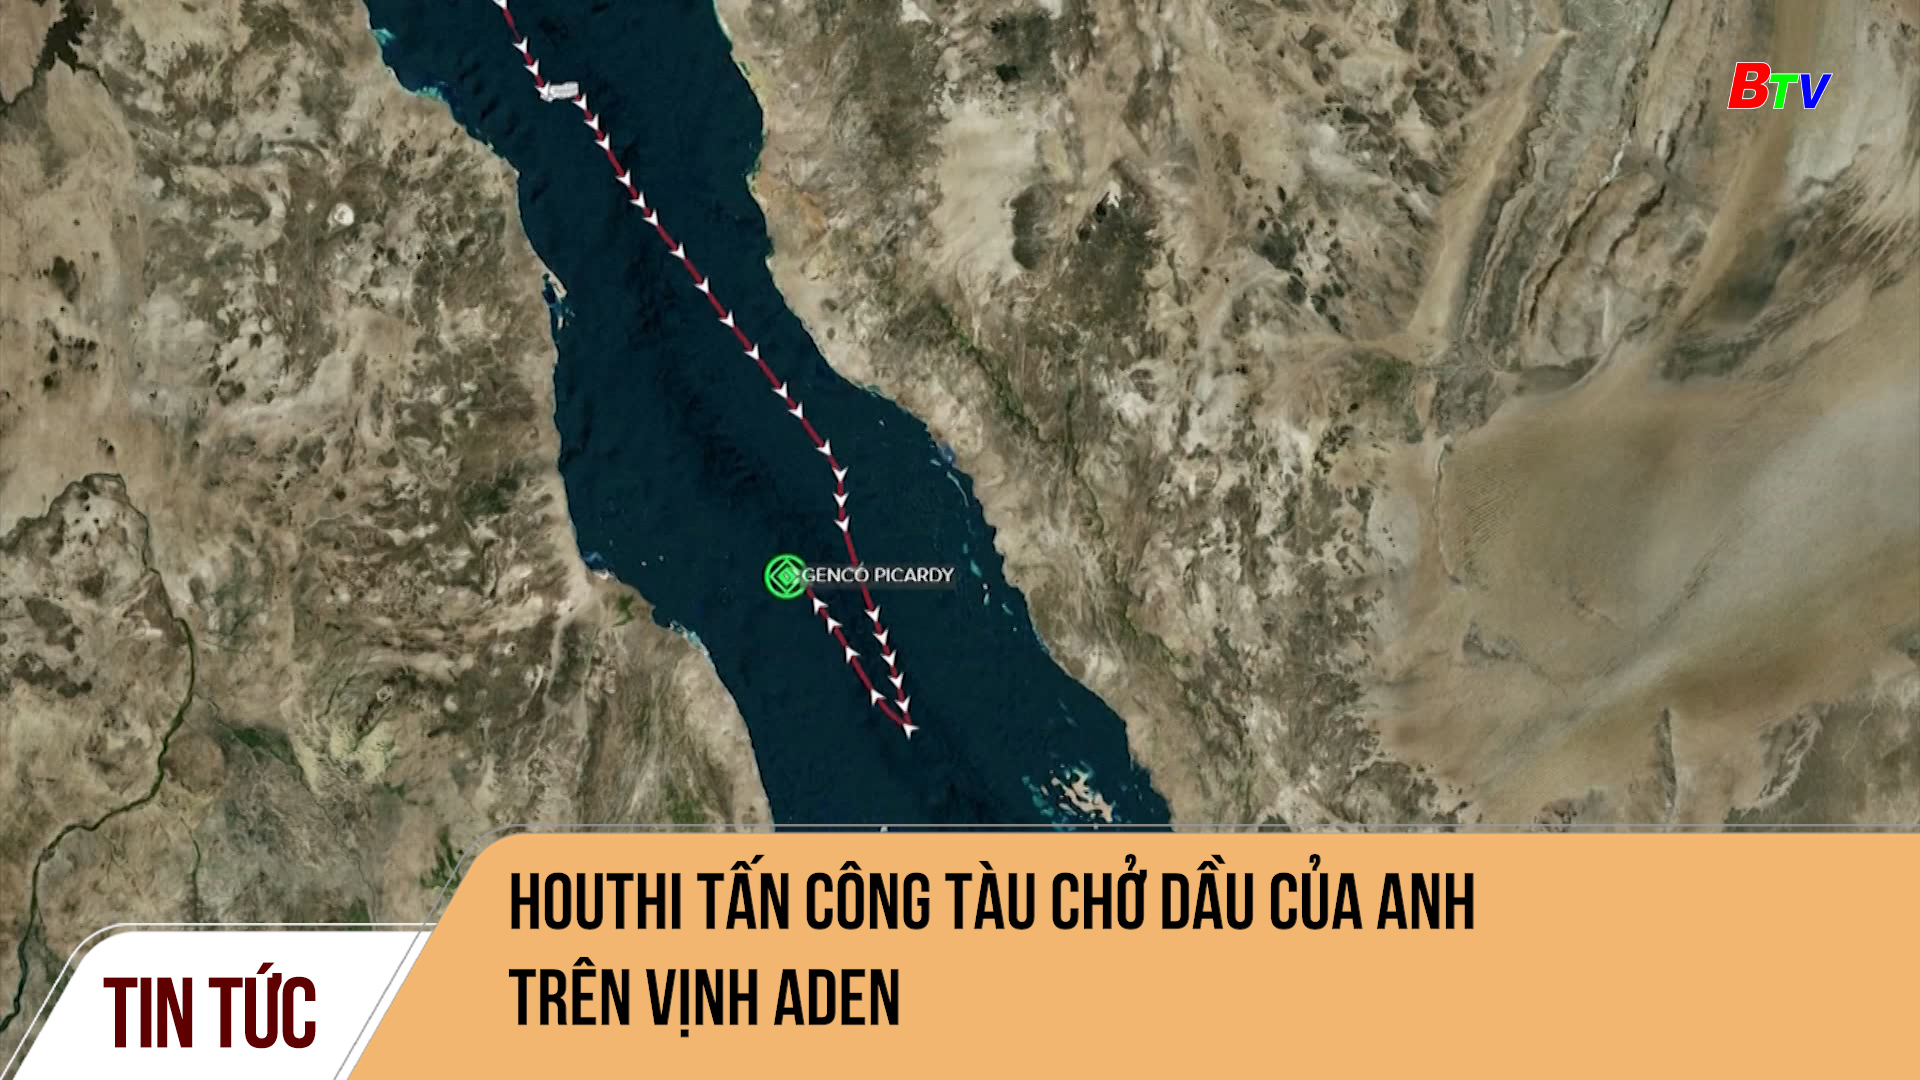 Houthi tấn công tàu chở dầu của Anh trên vịnh Aden